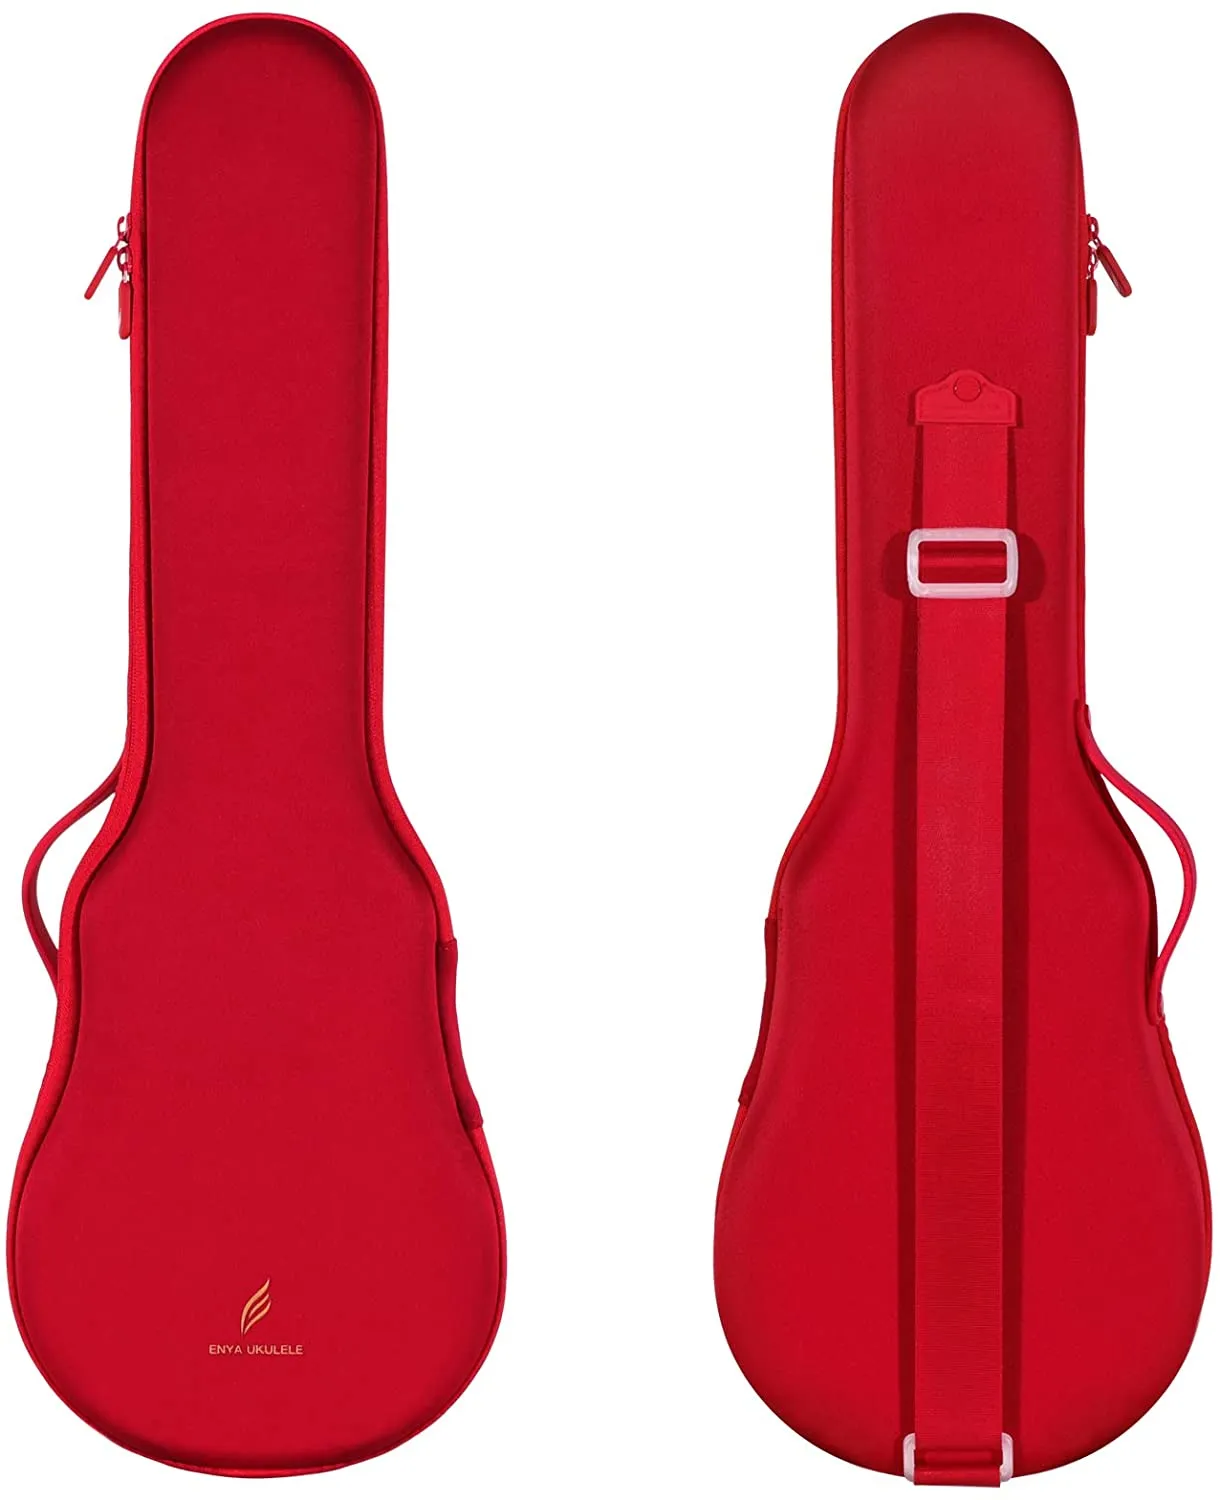 Enya Nova-Ukulele Intelligent Acoustic Guitar red, 4 Strings, Carbon Fiber, Beginner Instrument, 23", U, 23"